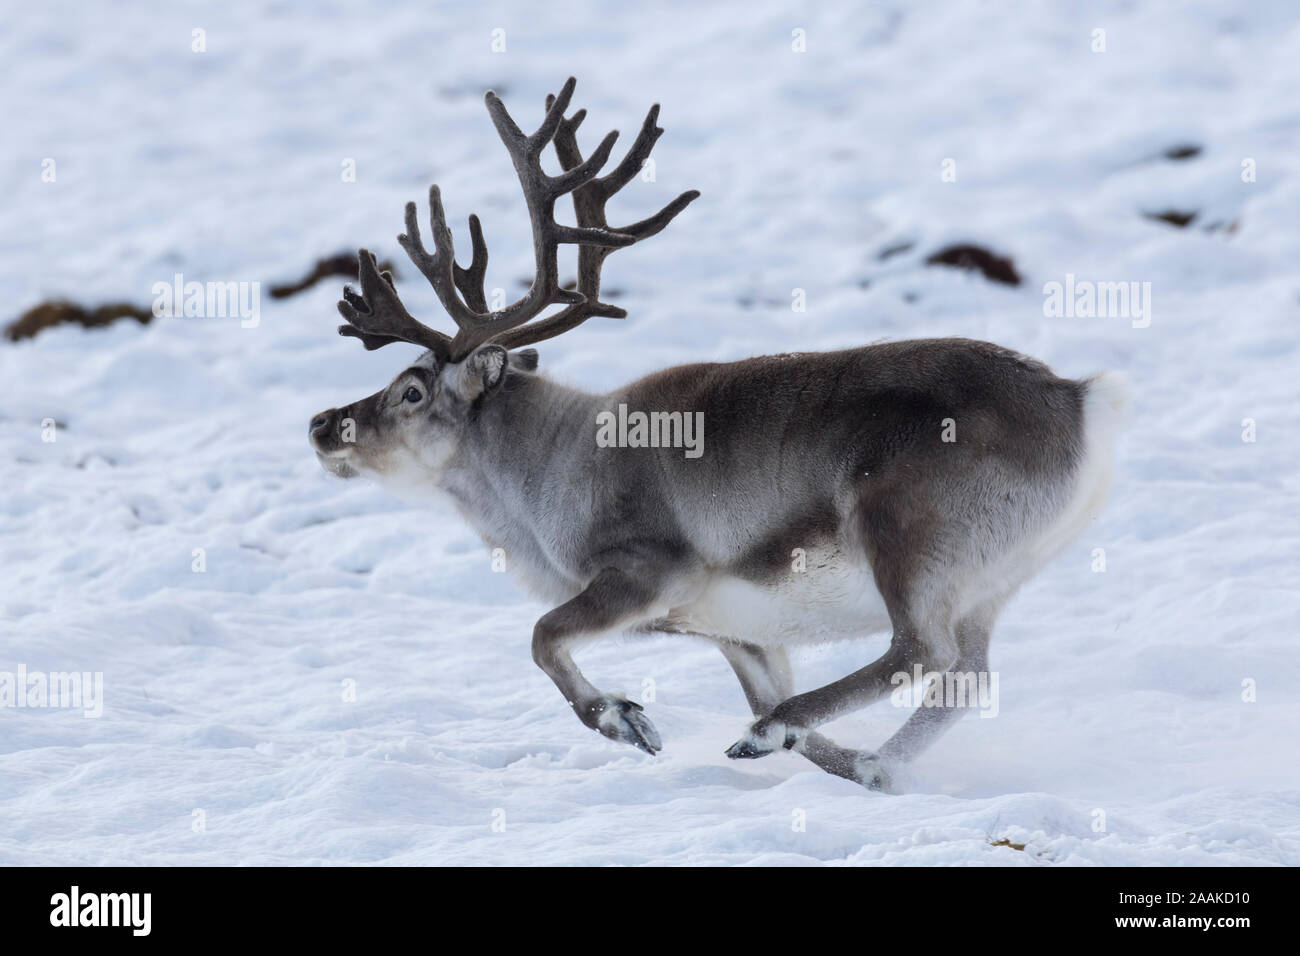 Renne du Svalbard (Rangifer tarandus platyrhynchus) homme / bull avec ses bois de velours s'exécutant sur la toundra couvertes de neige en automne / fall, Norvège Banque D'Images